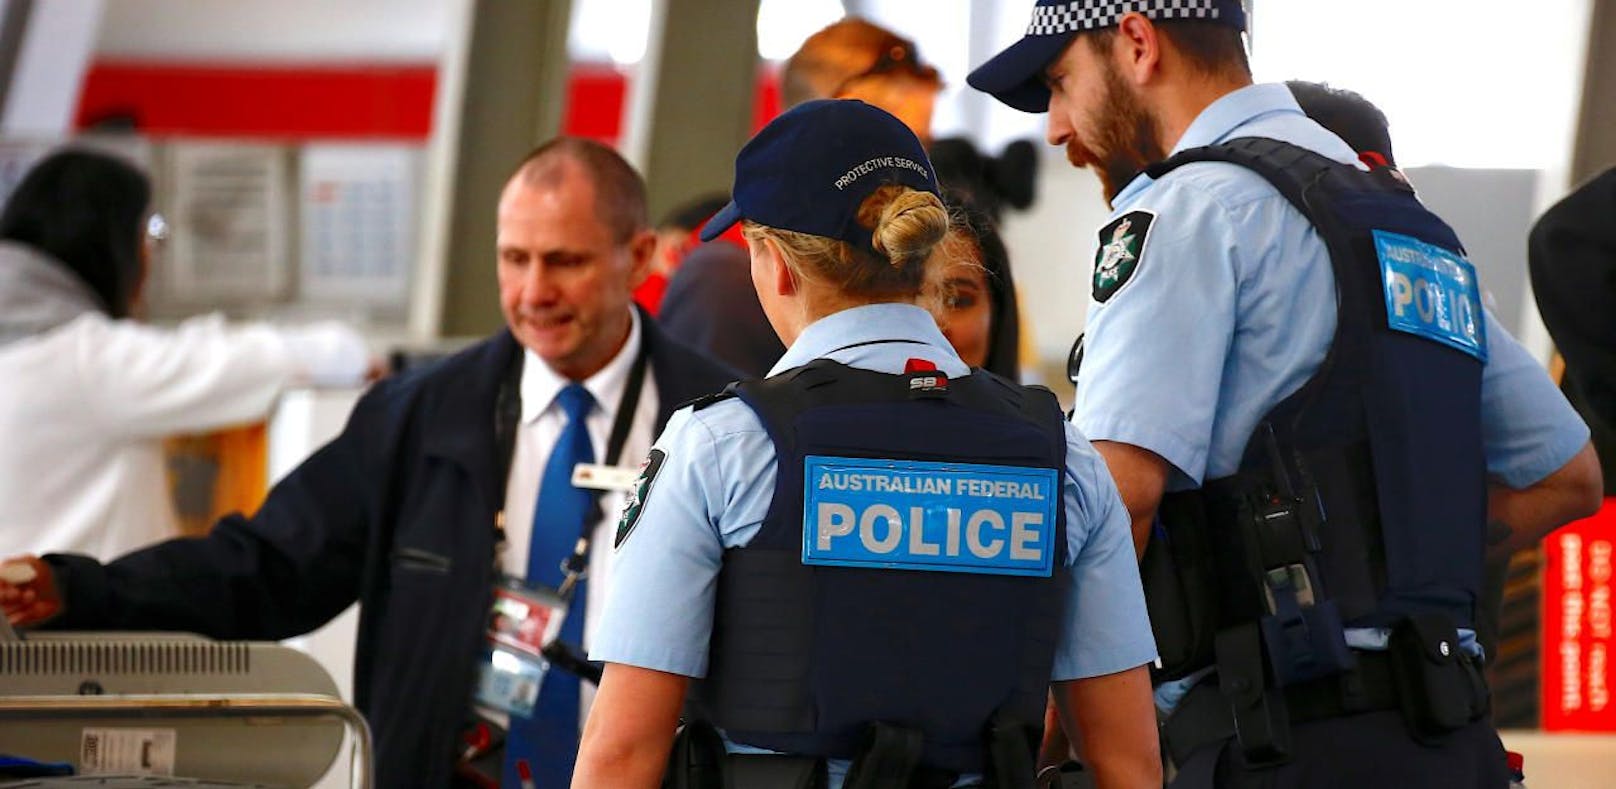 Geplanter Terroranschlag in Australien vereitelt